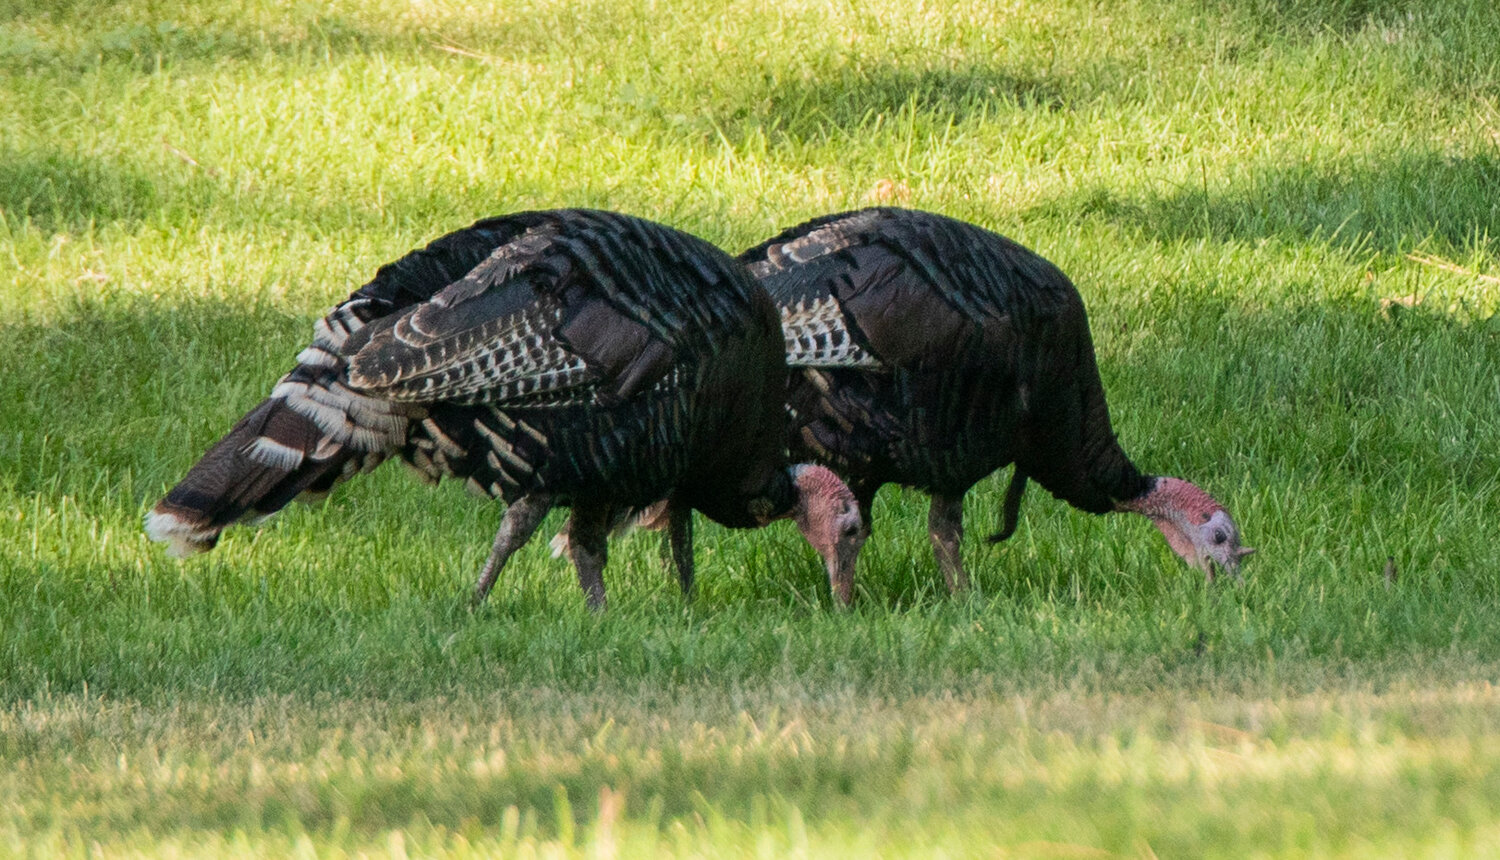 Turkeys graze in a park on July 11 in Spokane.